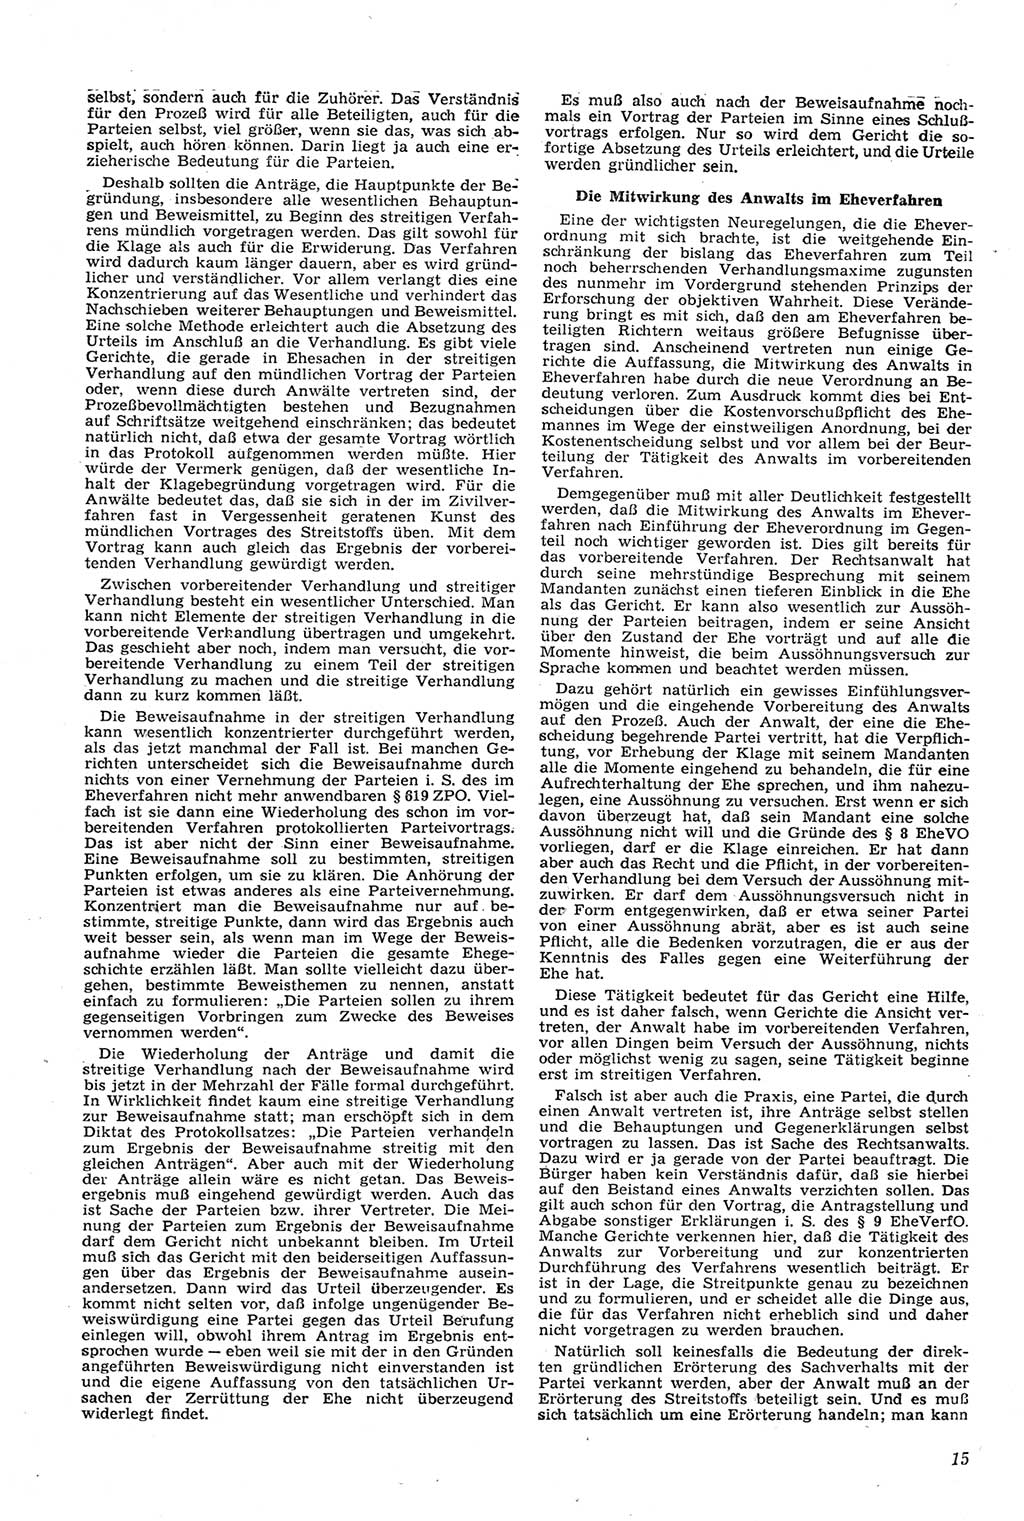 Neue Justiz (NJ), Zeitschrift für Recht und Rechtswissenschaft [Deutsche Demokratische Republik (DDR)], 11. Jahrgang 1957, Seite 15 (NJ DDR 1957, S. 15)